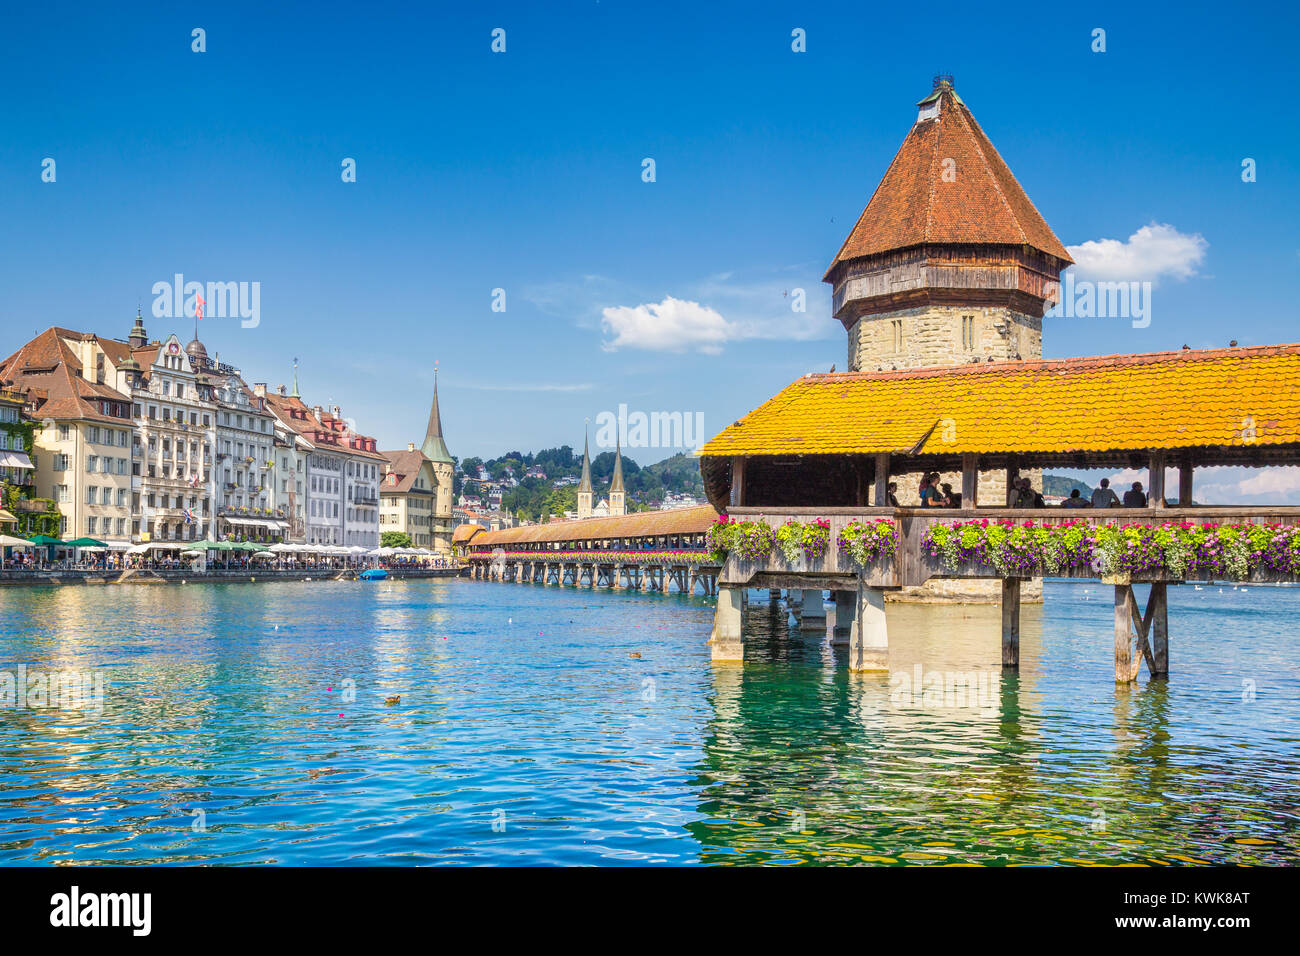 Centro histórico de la ciudad de Lucerna, con el famoso Puente de la capilla, símbolo de la ciudad y uno de los principales atractivos turísticos de Suiza en verano Foto de stock